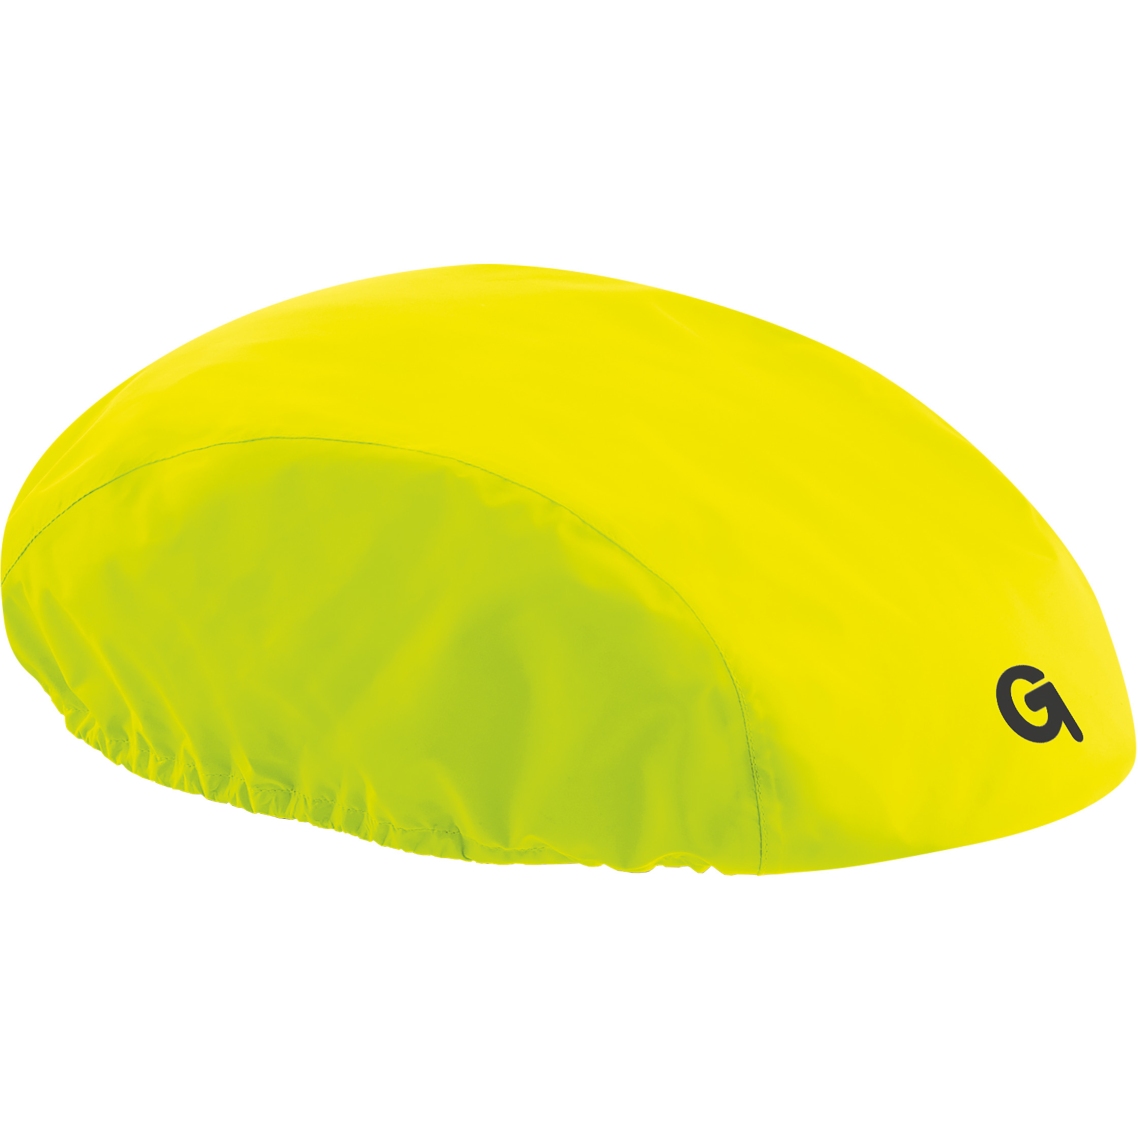 Produktbild von Gonso Allwetter Helmhaube - Safety Yellow